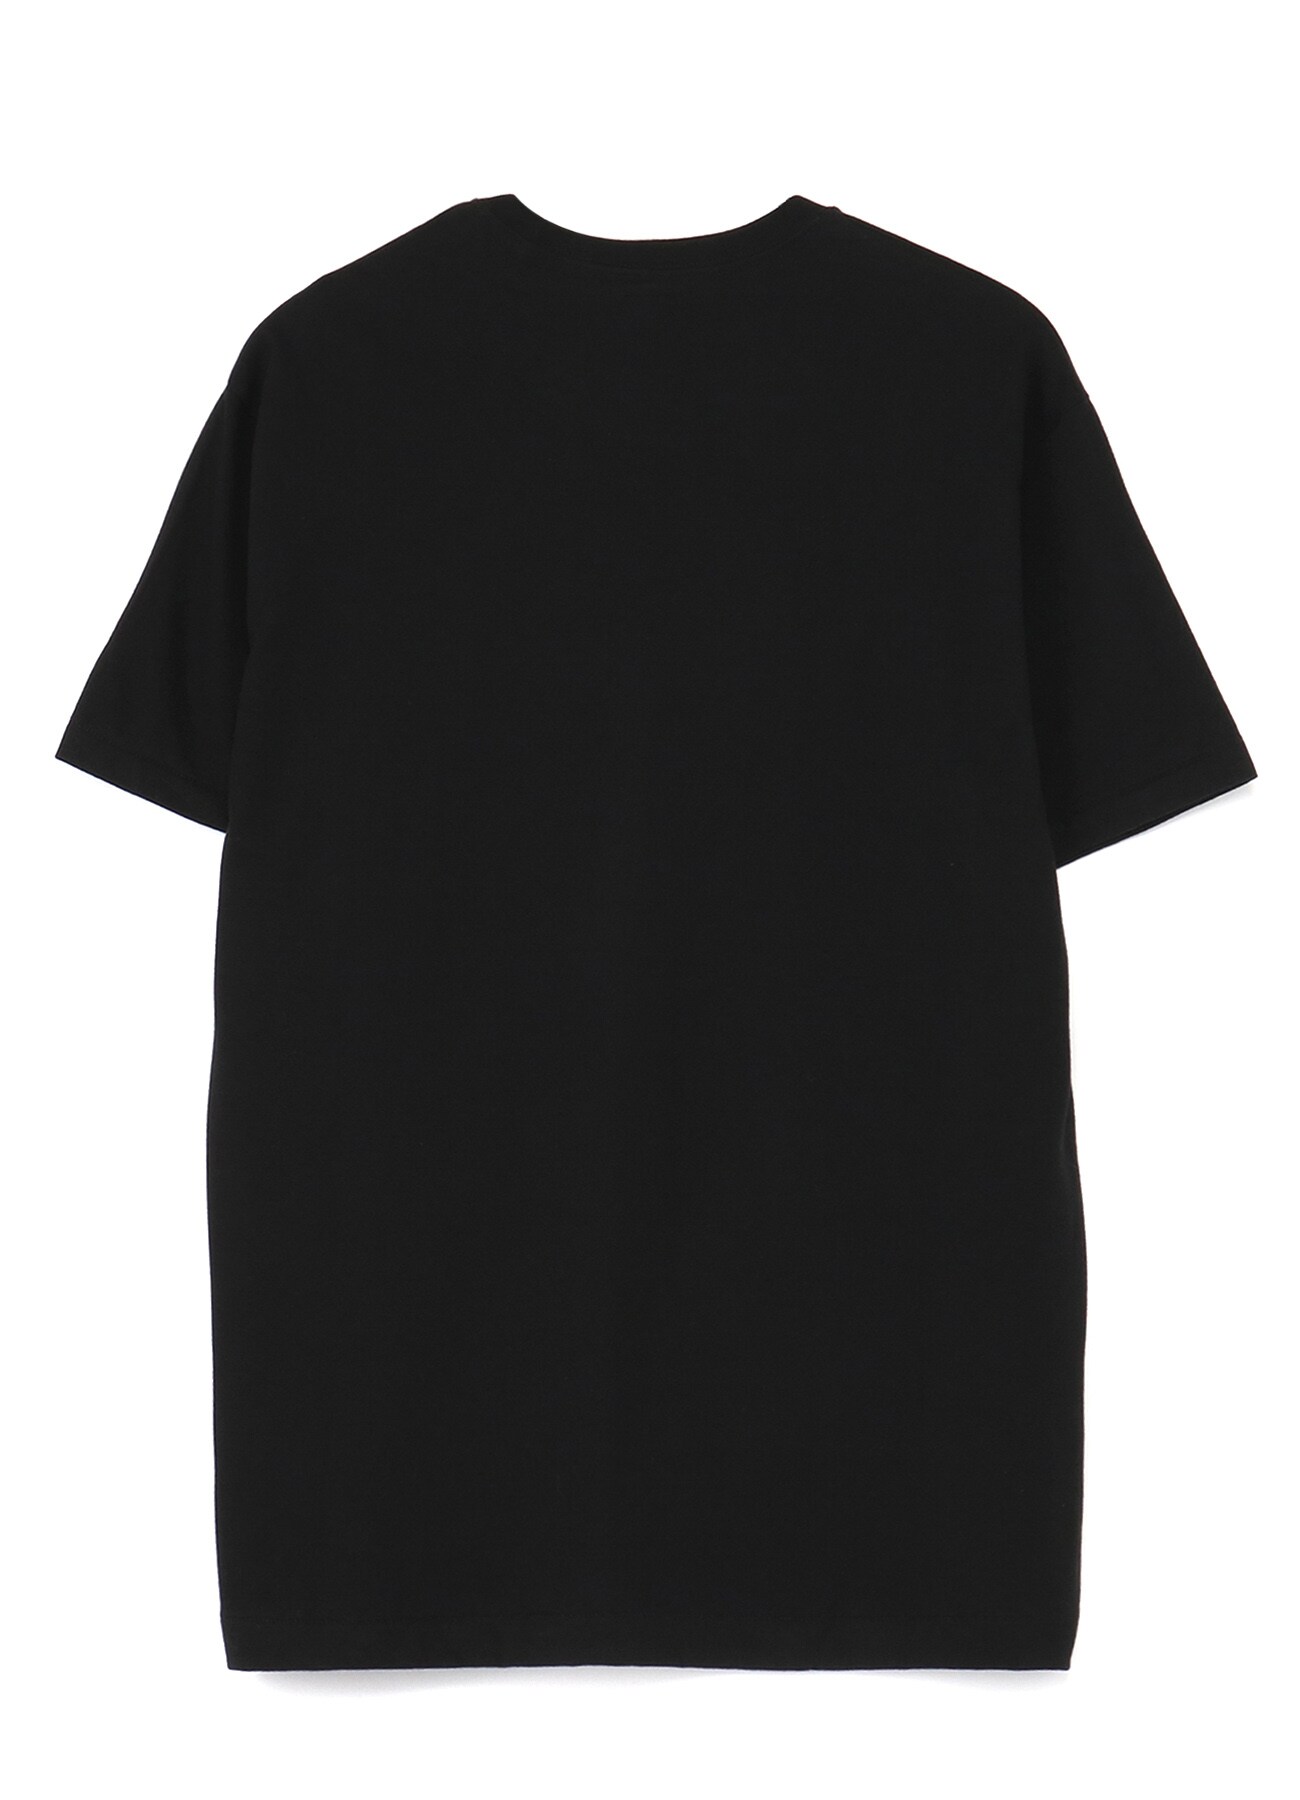 20/-Plain Stitch Feu Print T-Shirt B